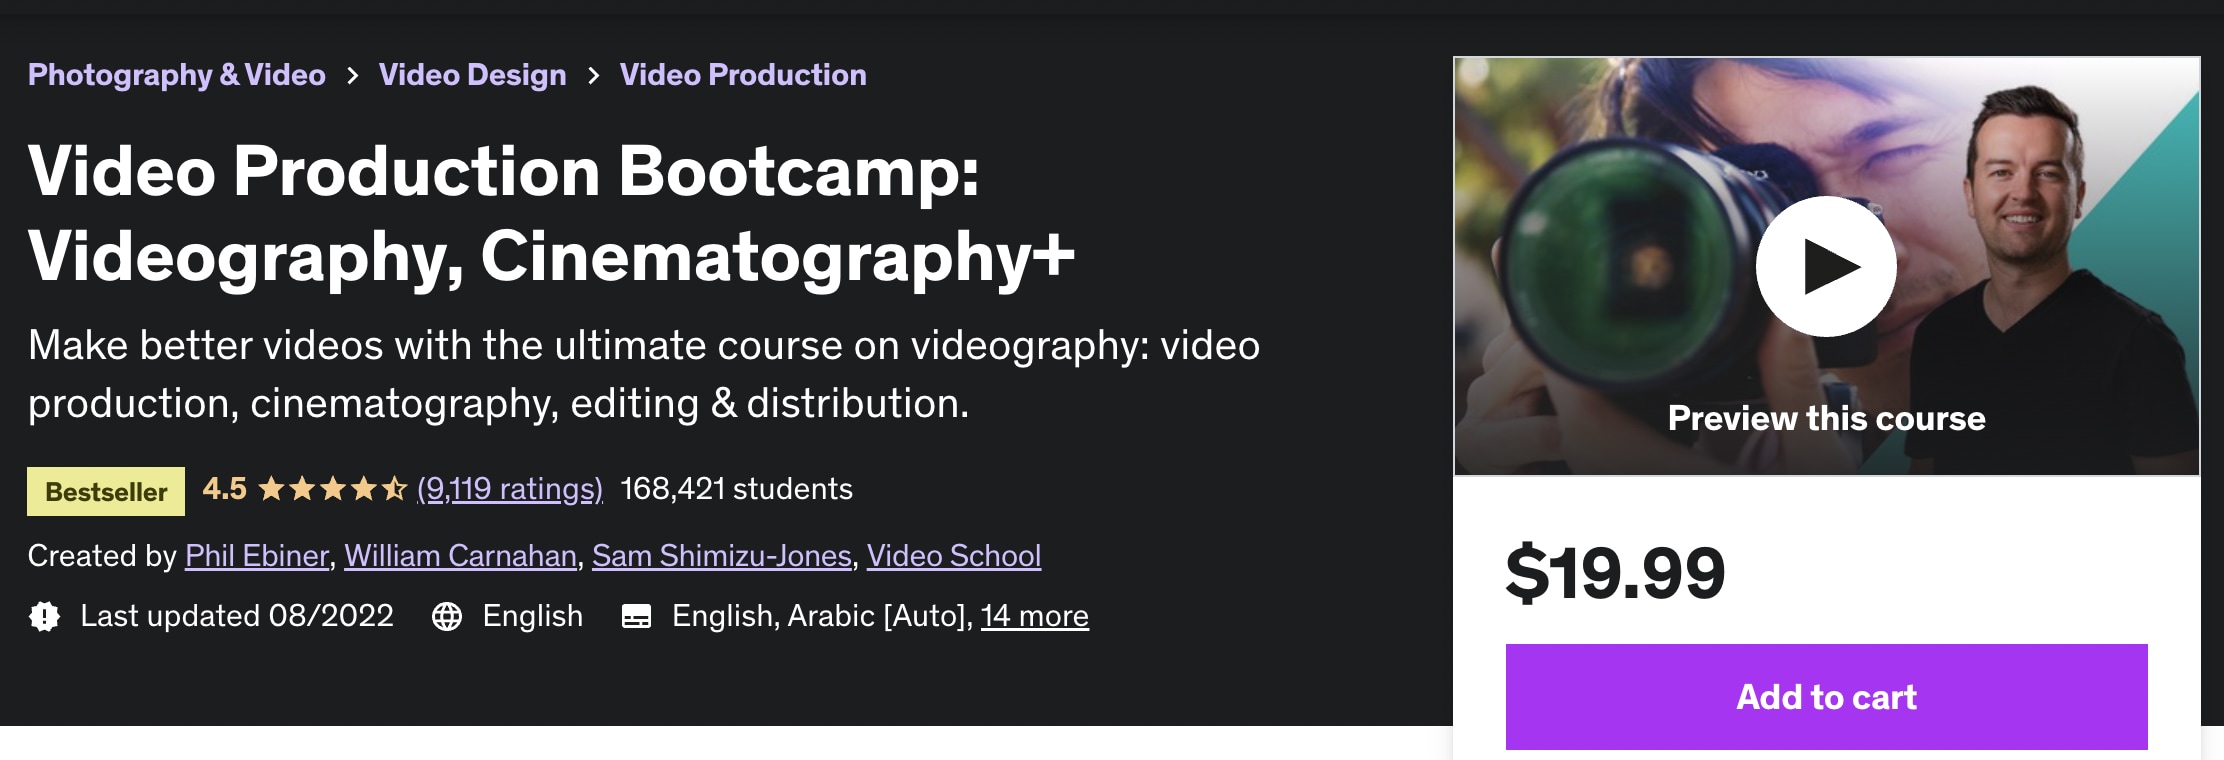 bootcamp de producción de video en udemy